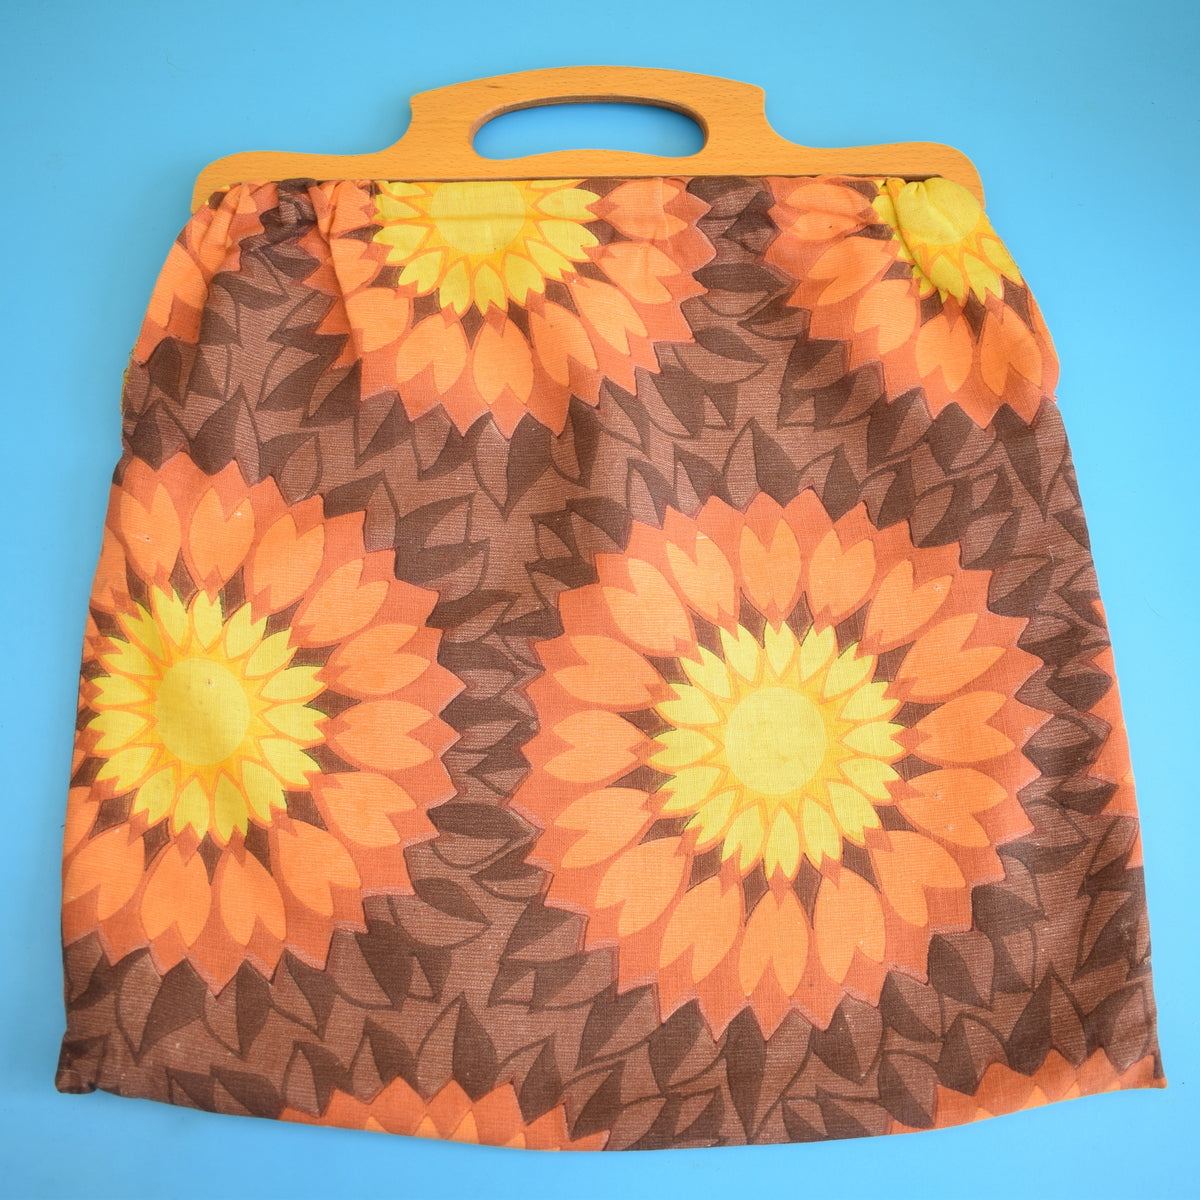 Vintage 1960s Handmade Knitting Bag / Storage Bag - Orange. Yellow & Brown